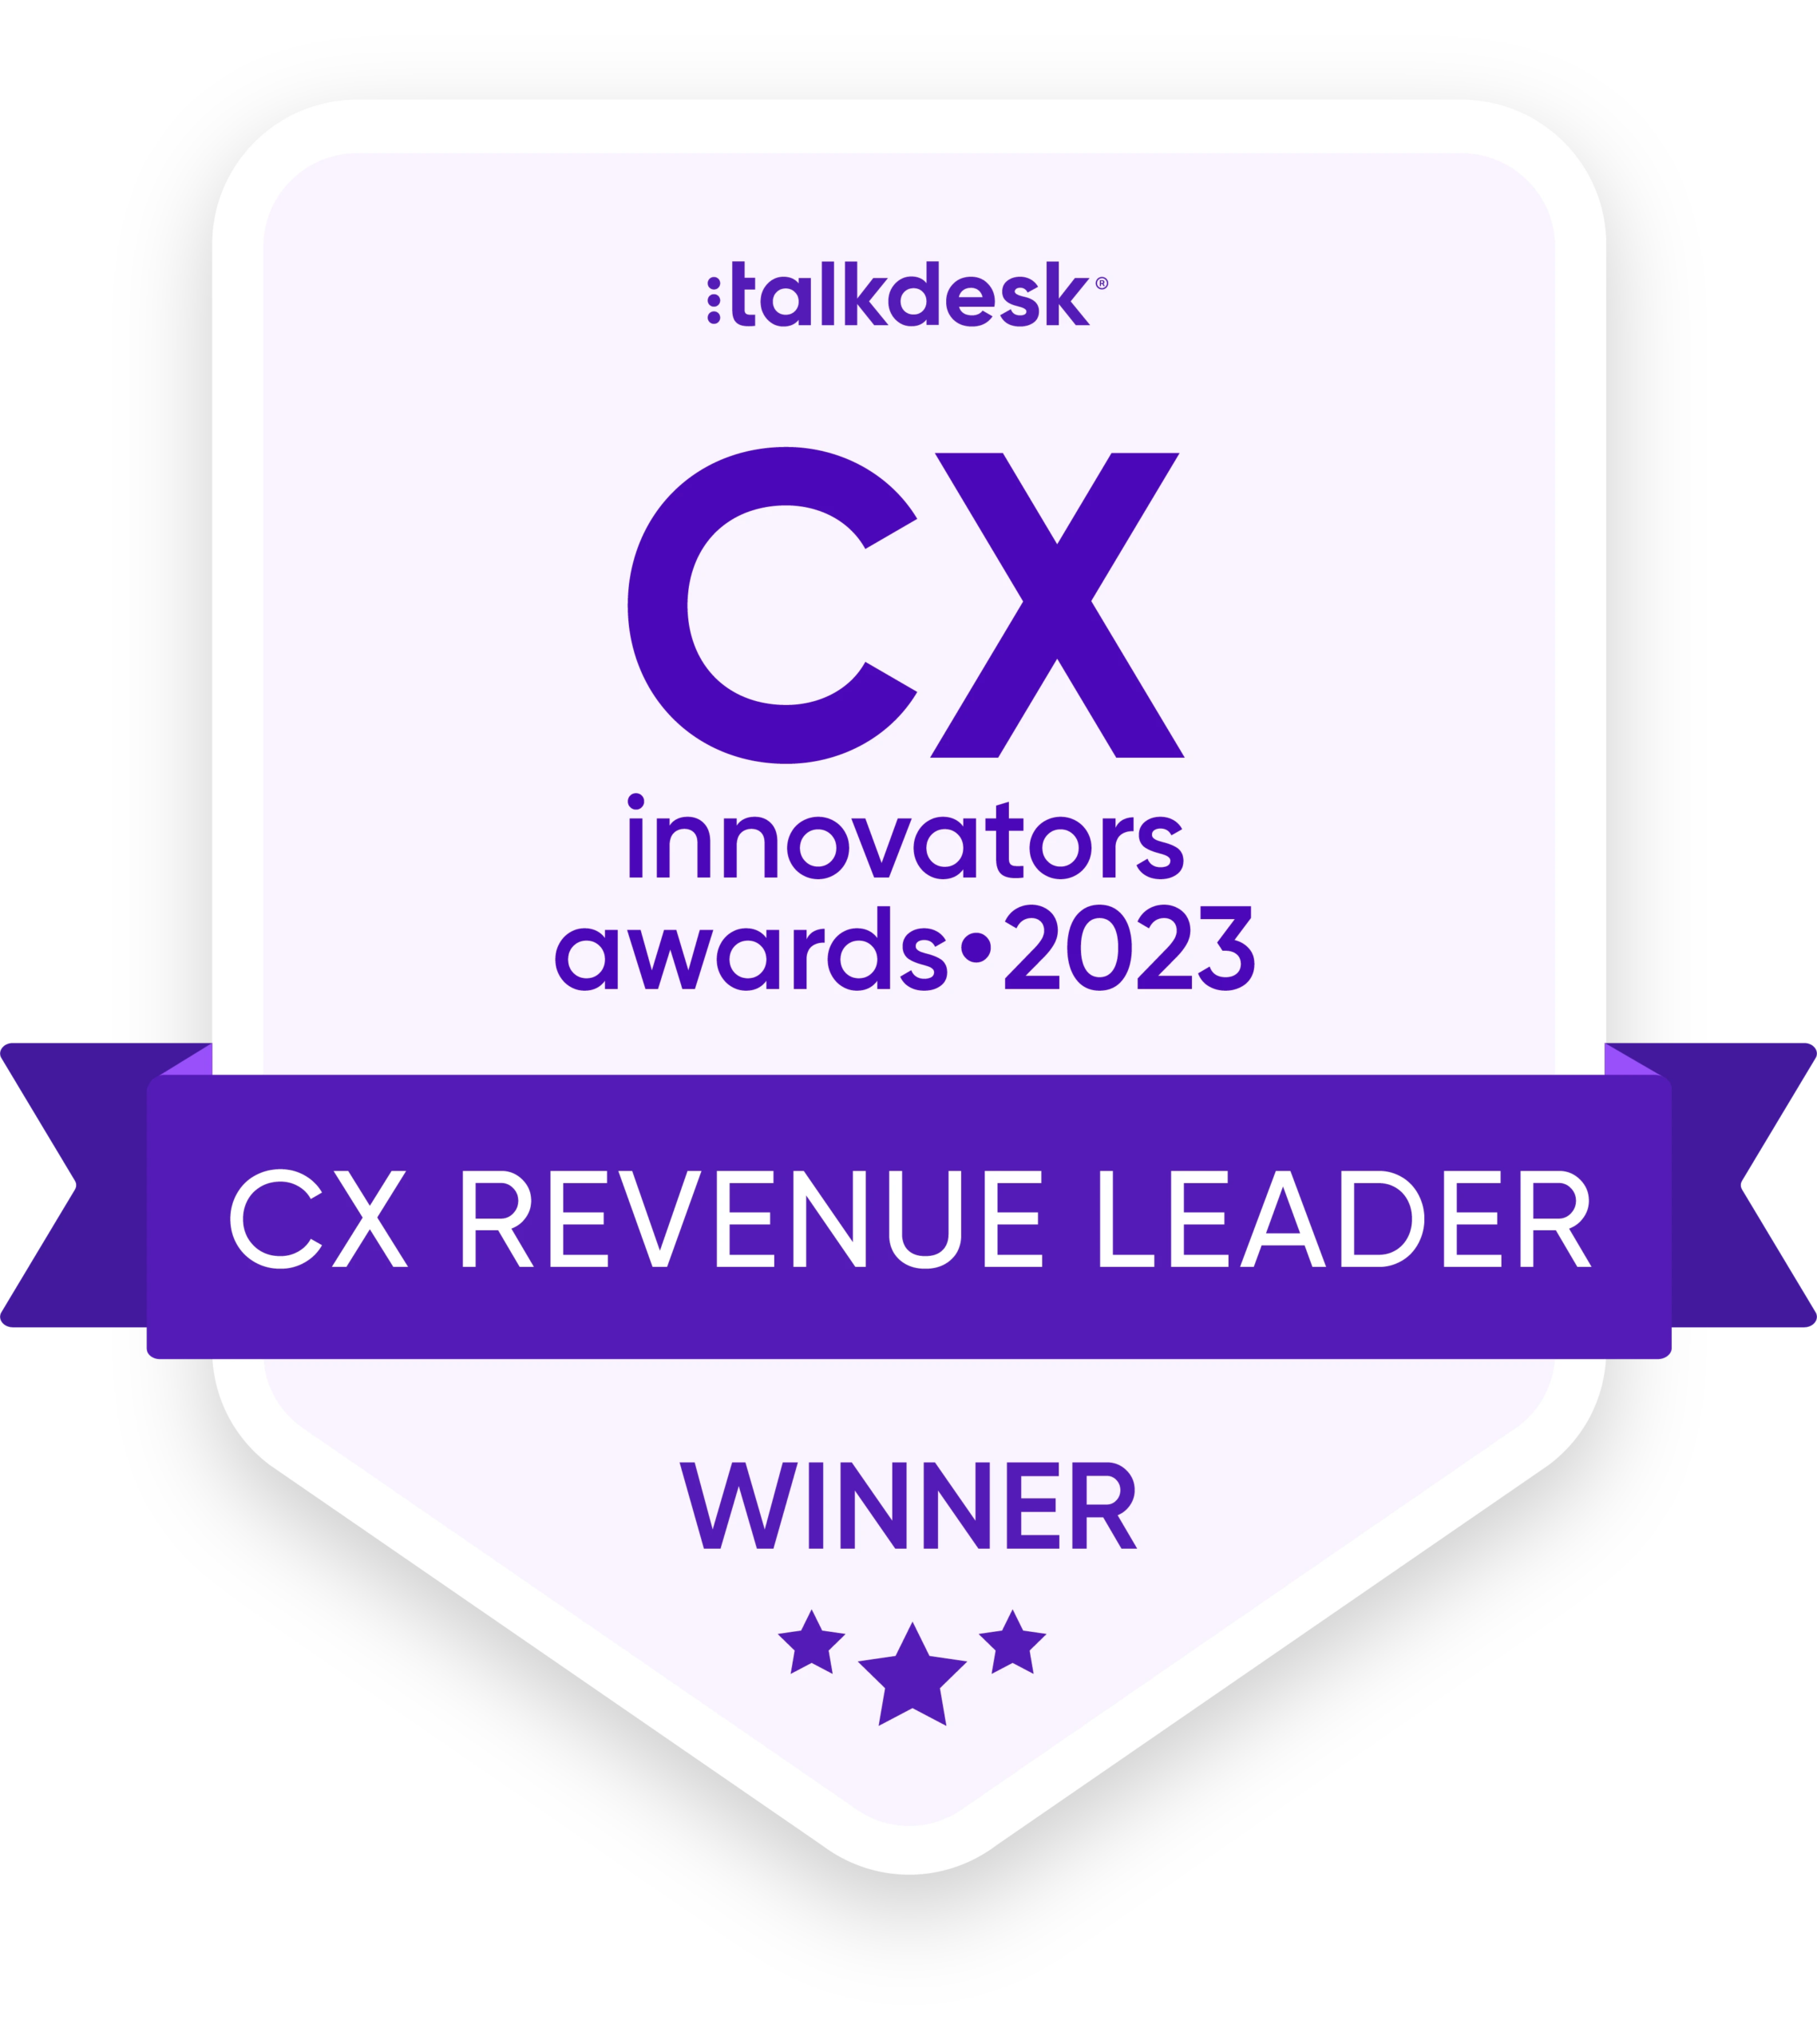 CX Revenue Leader Award 2023